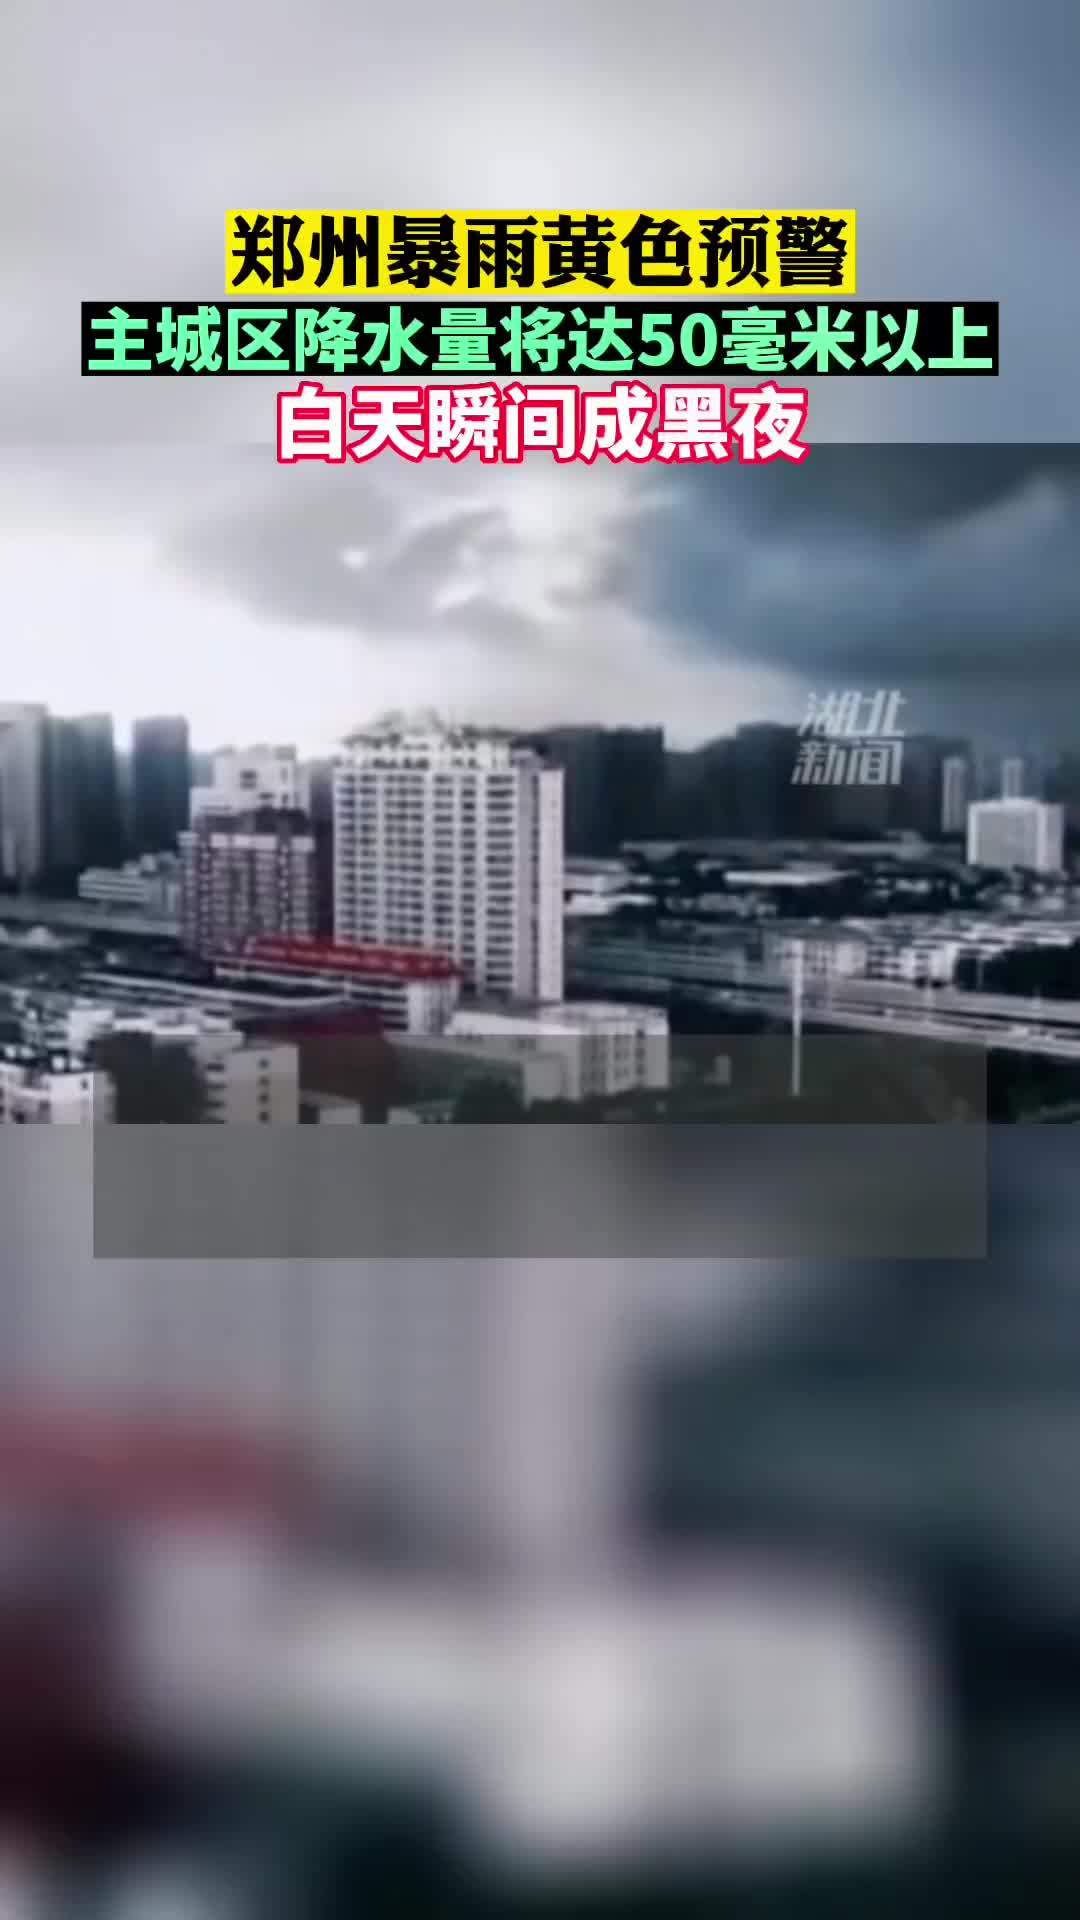 郑州暴雨来袭 白天瞬间成黑夜 郑州城区现罕见“绿色天空”-新闻频道-和讯网